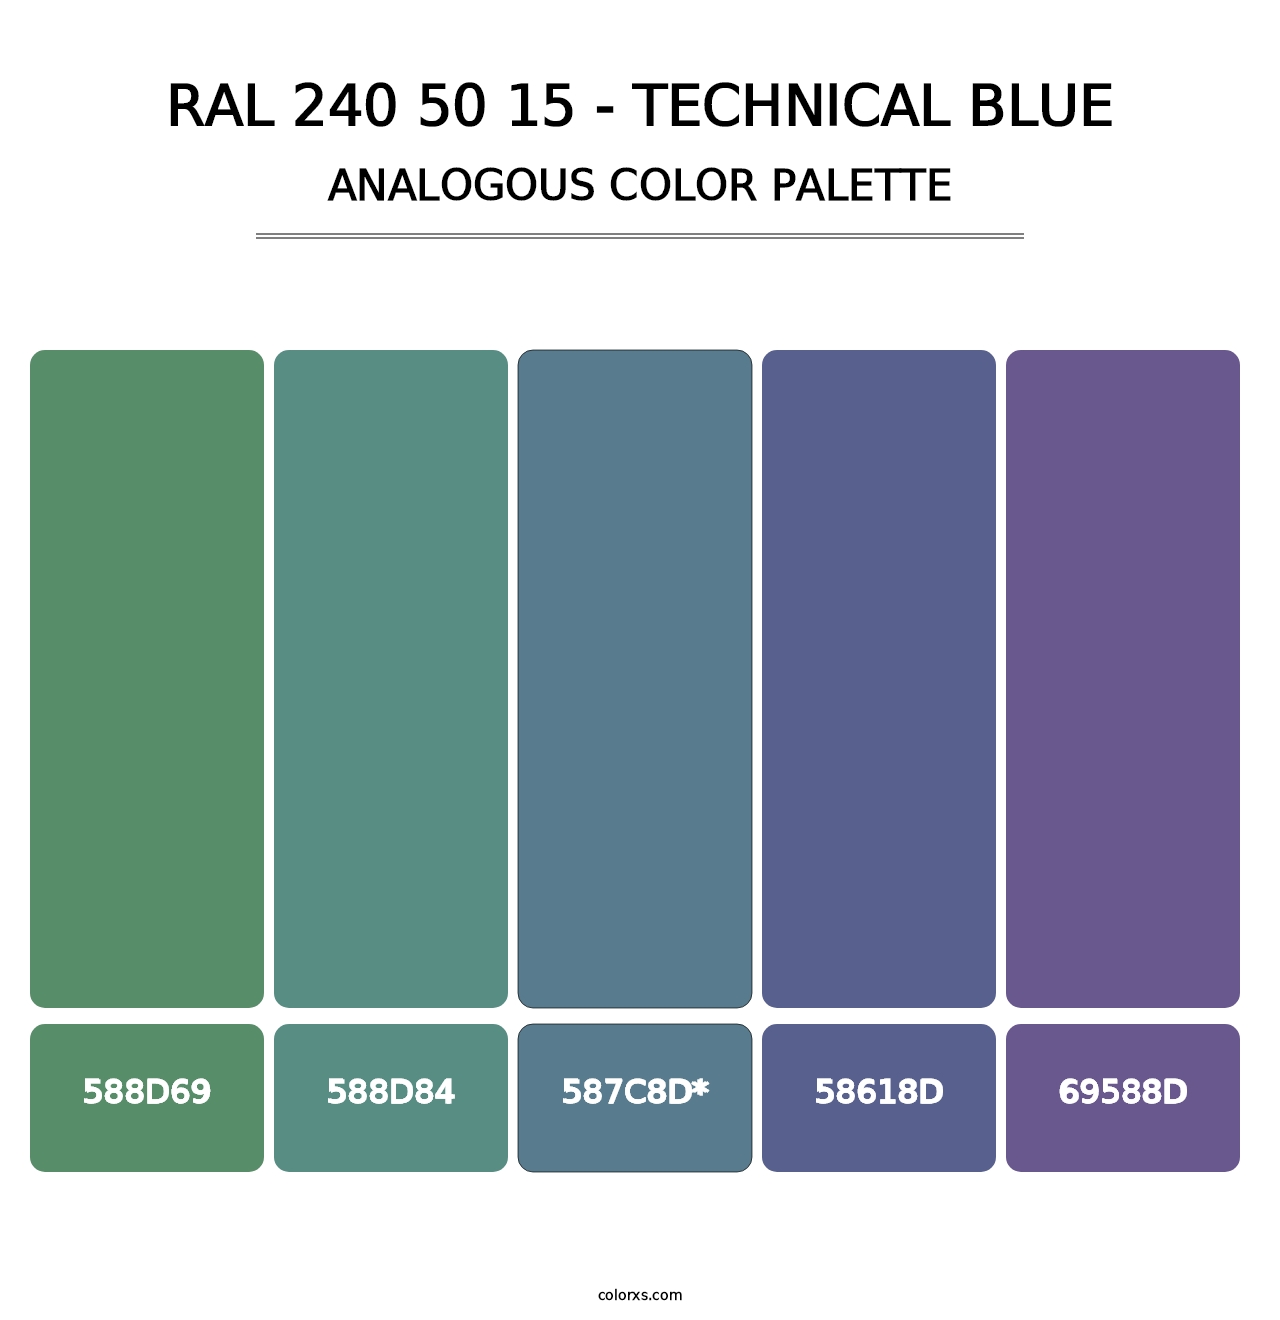 RAL 240 50 15 - Technical Blue - Analogous Color Palette